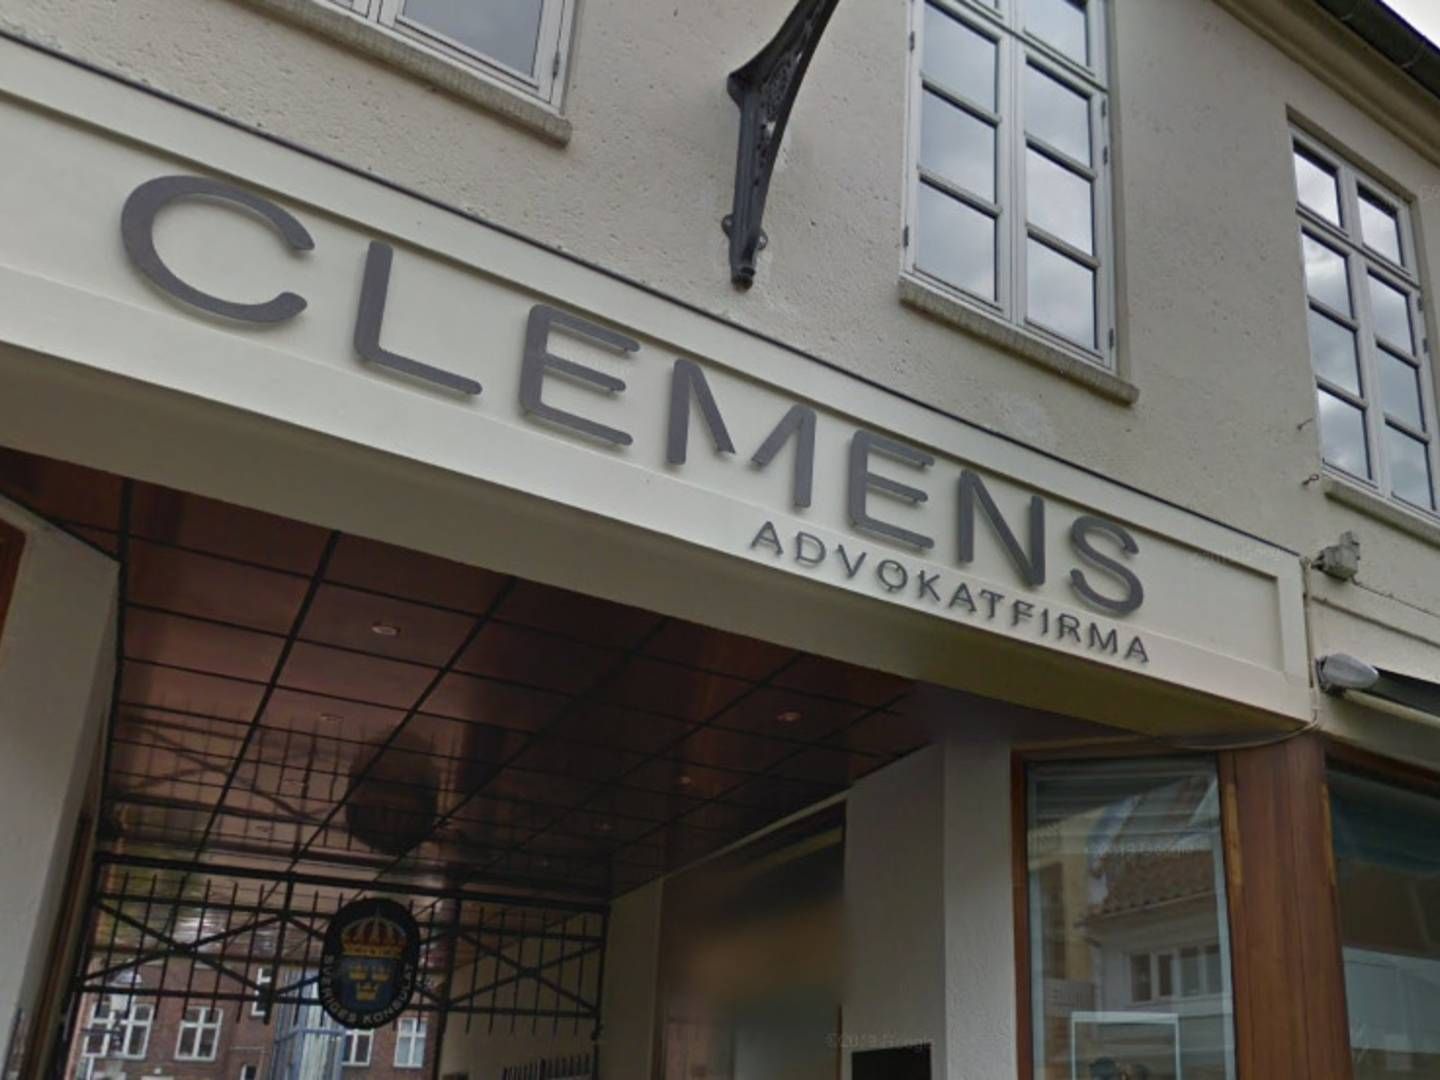 Clemens Advokatfirma holder til på Skt. Clemens Stræde i Aarhus. | Foto: Google Maps